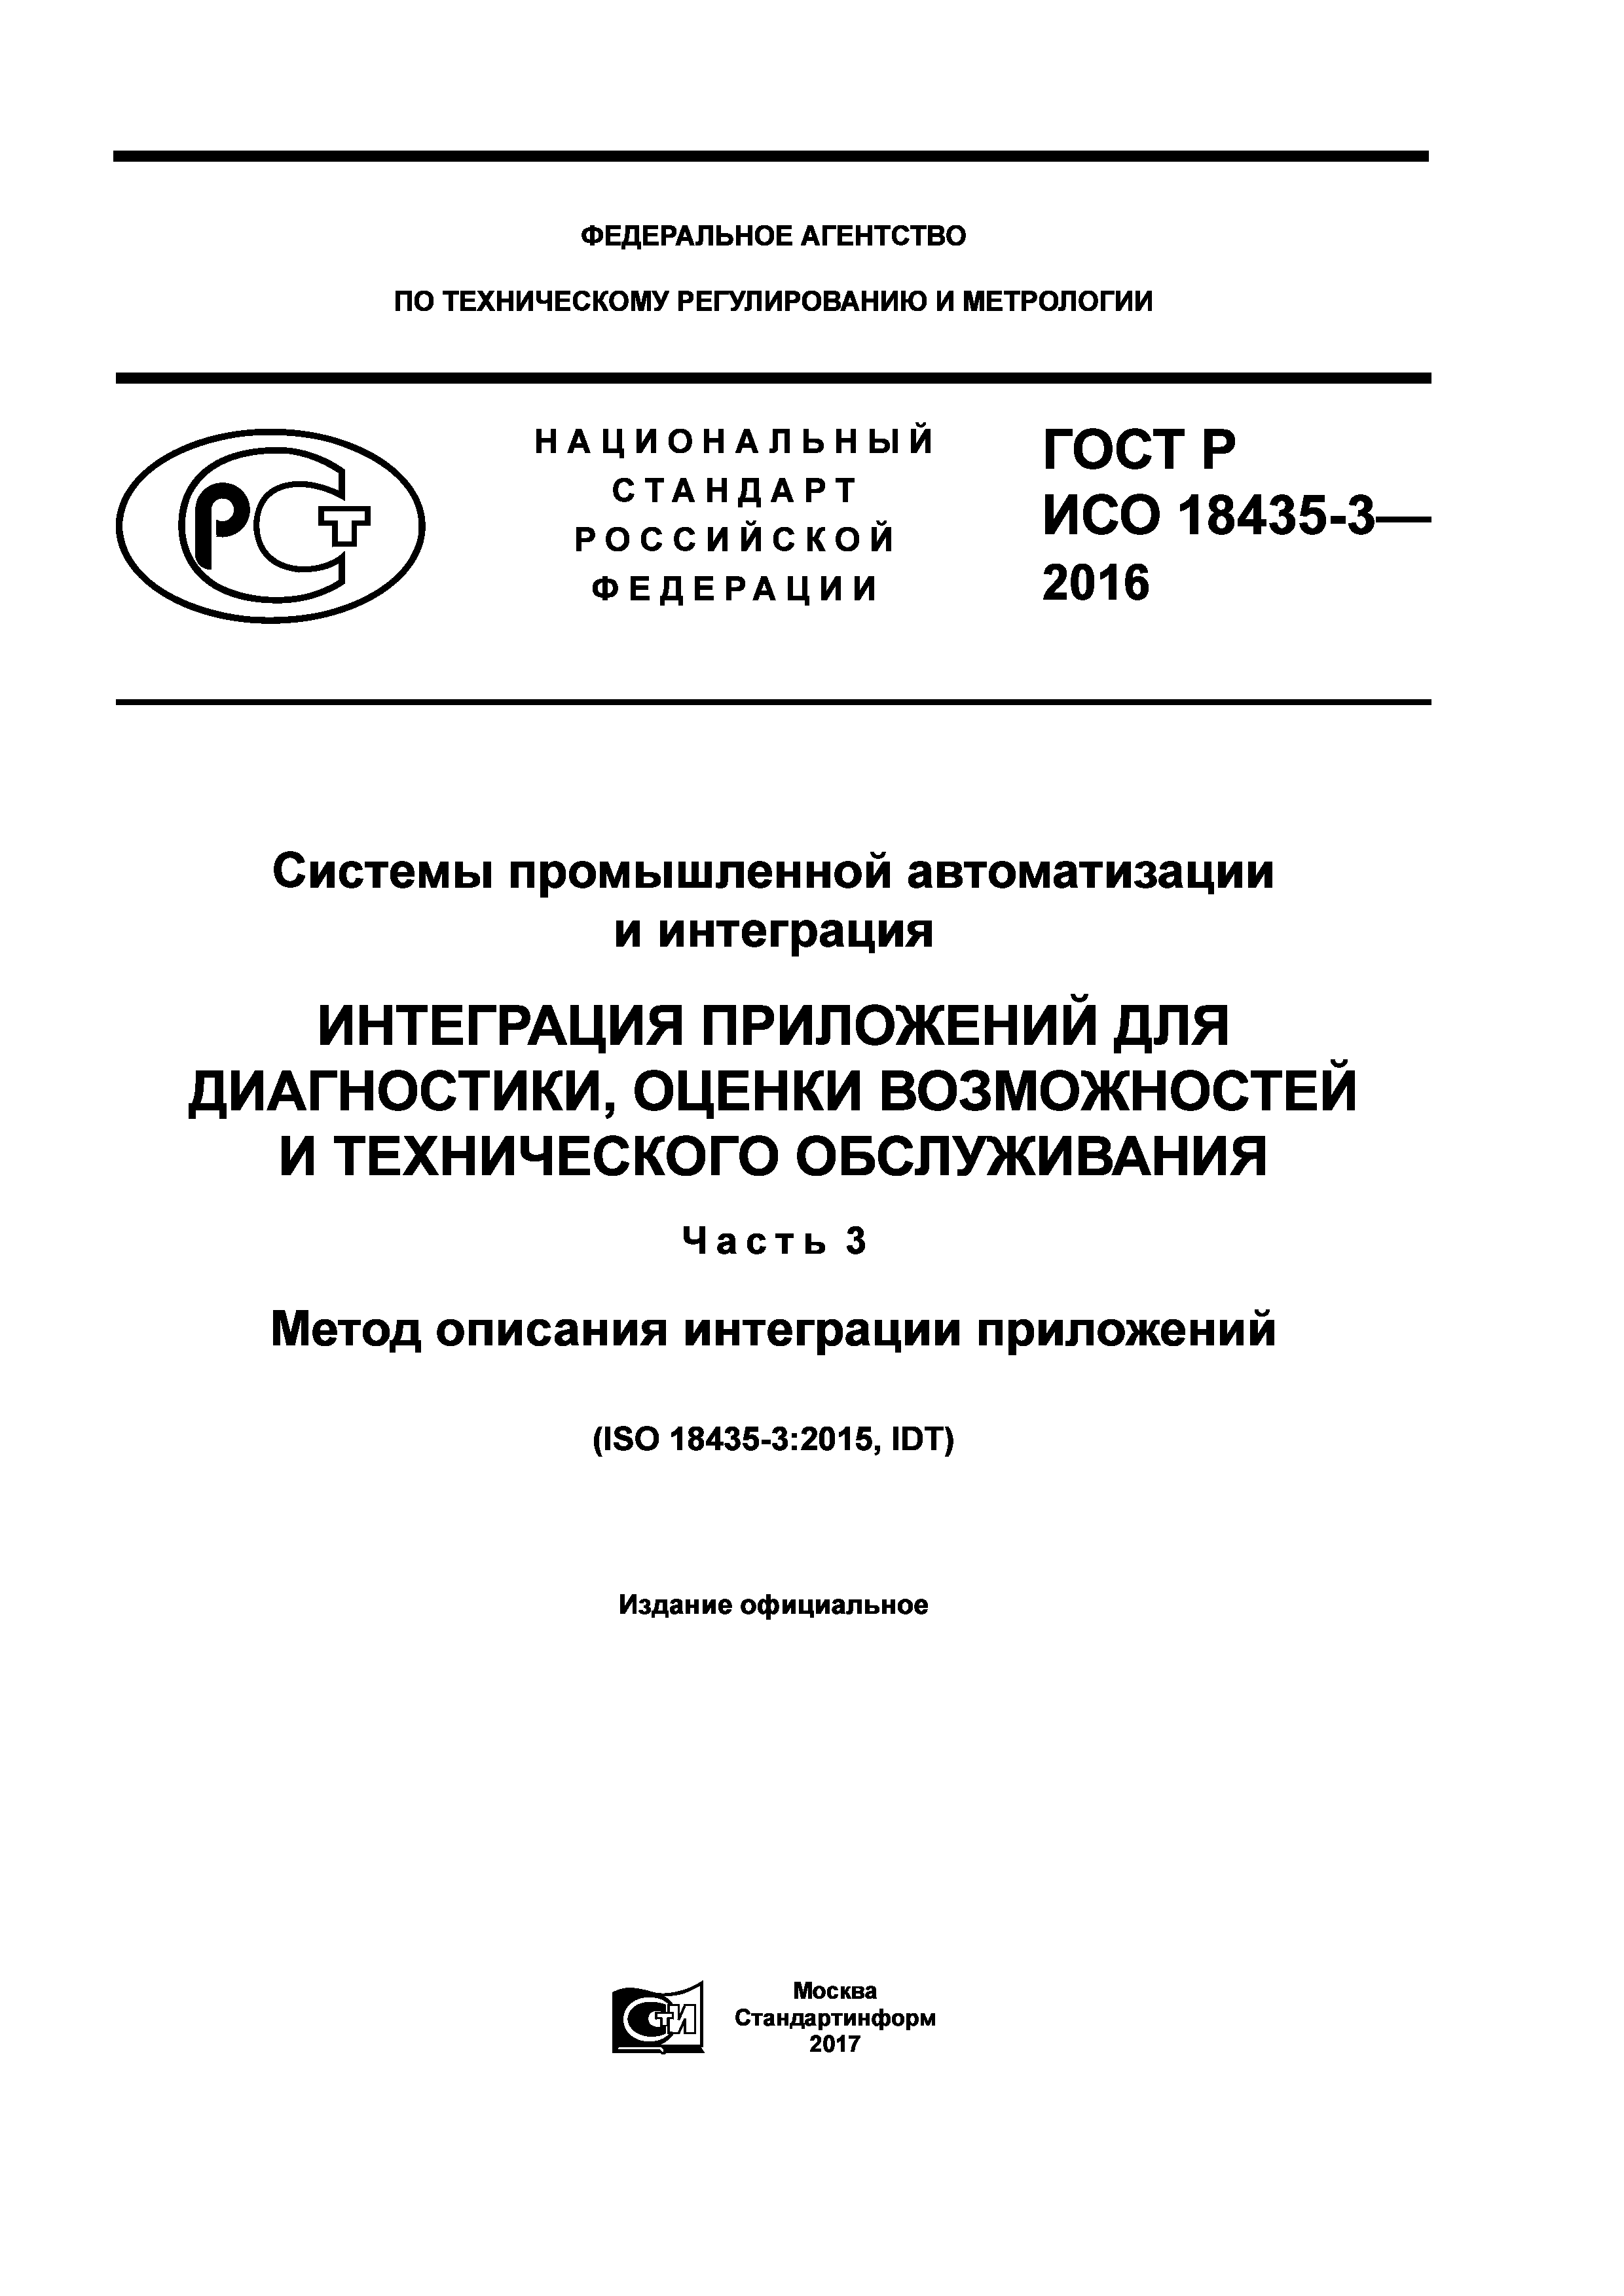 ГОСТ Р ИСО 18435-3-2016